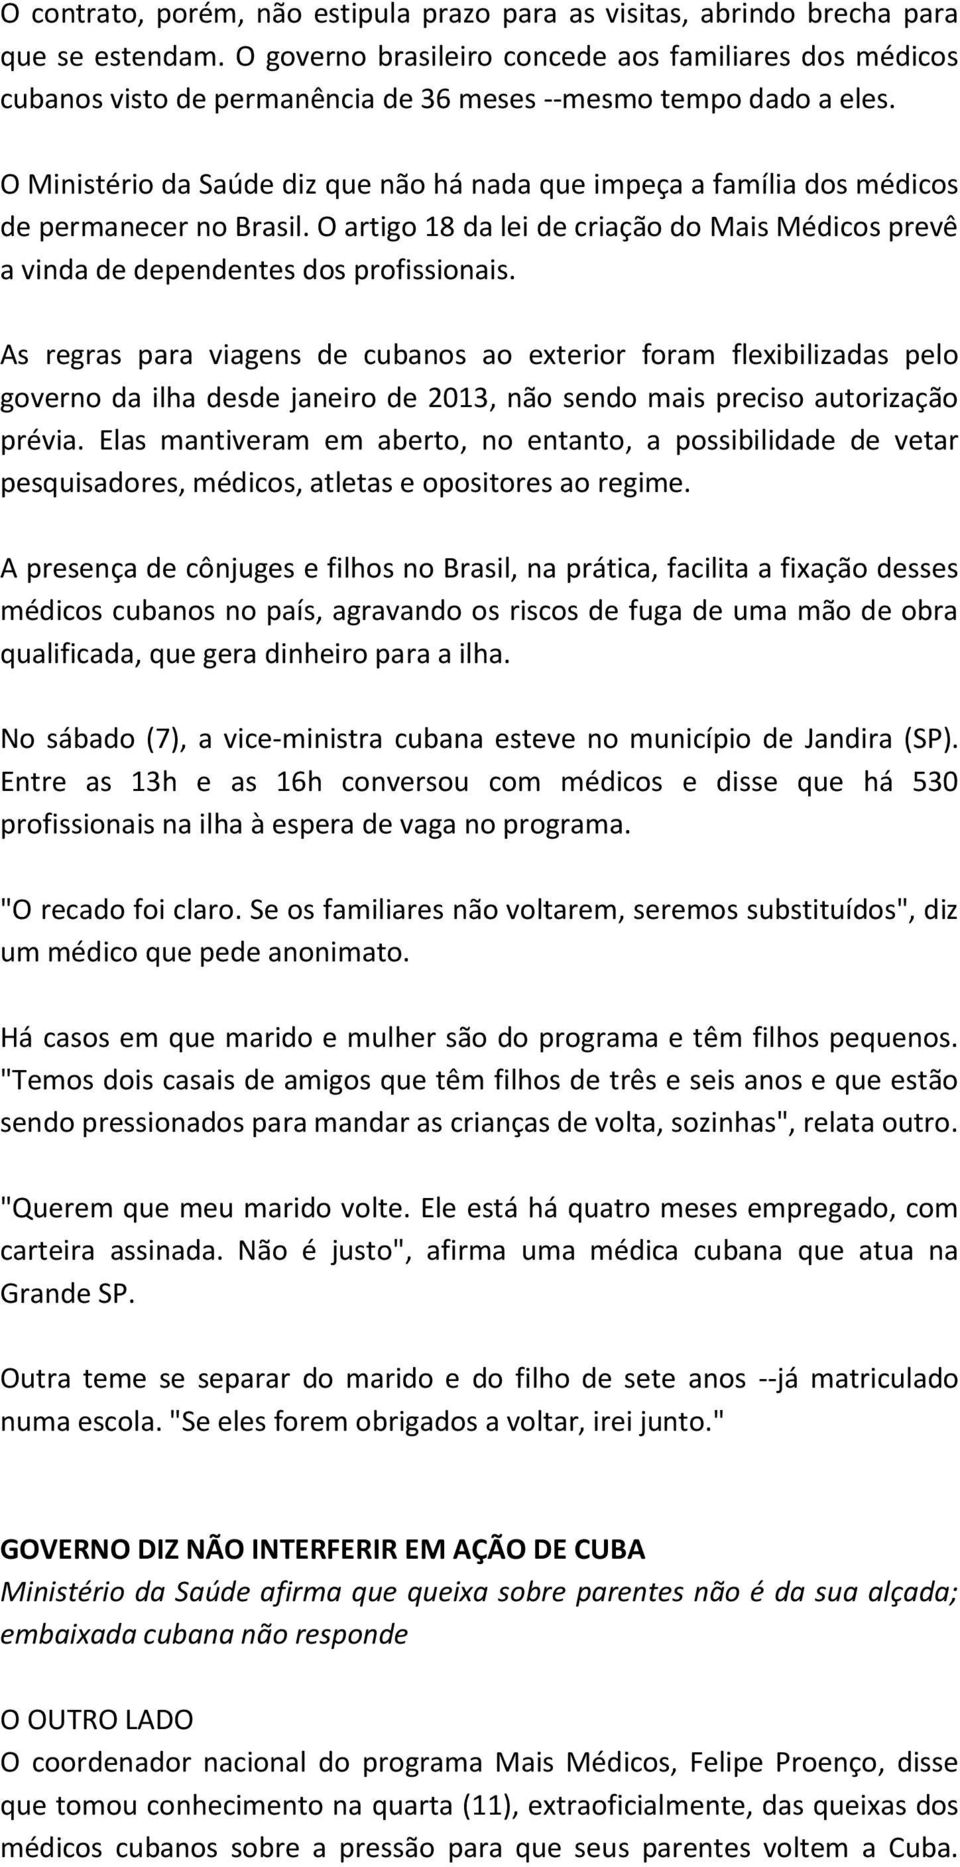 O Ministério da Saúde diz que não há nada que impeça a família dos médicos de permanecer no Brasil. O artigo 18 da lei de criação do Mais Médicos prevê a vinda de dependentes dos profissionais.